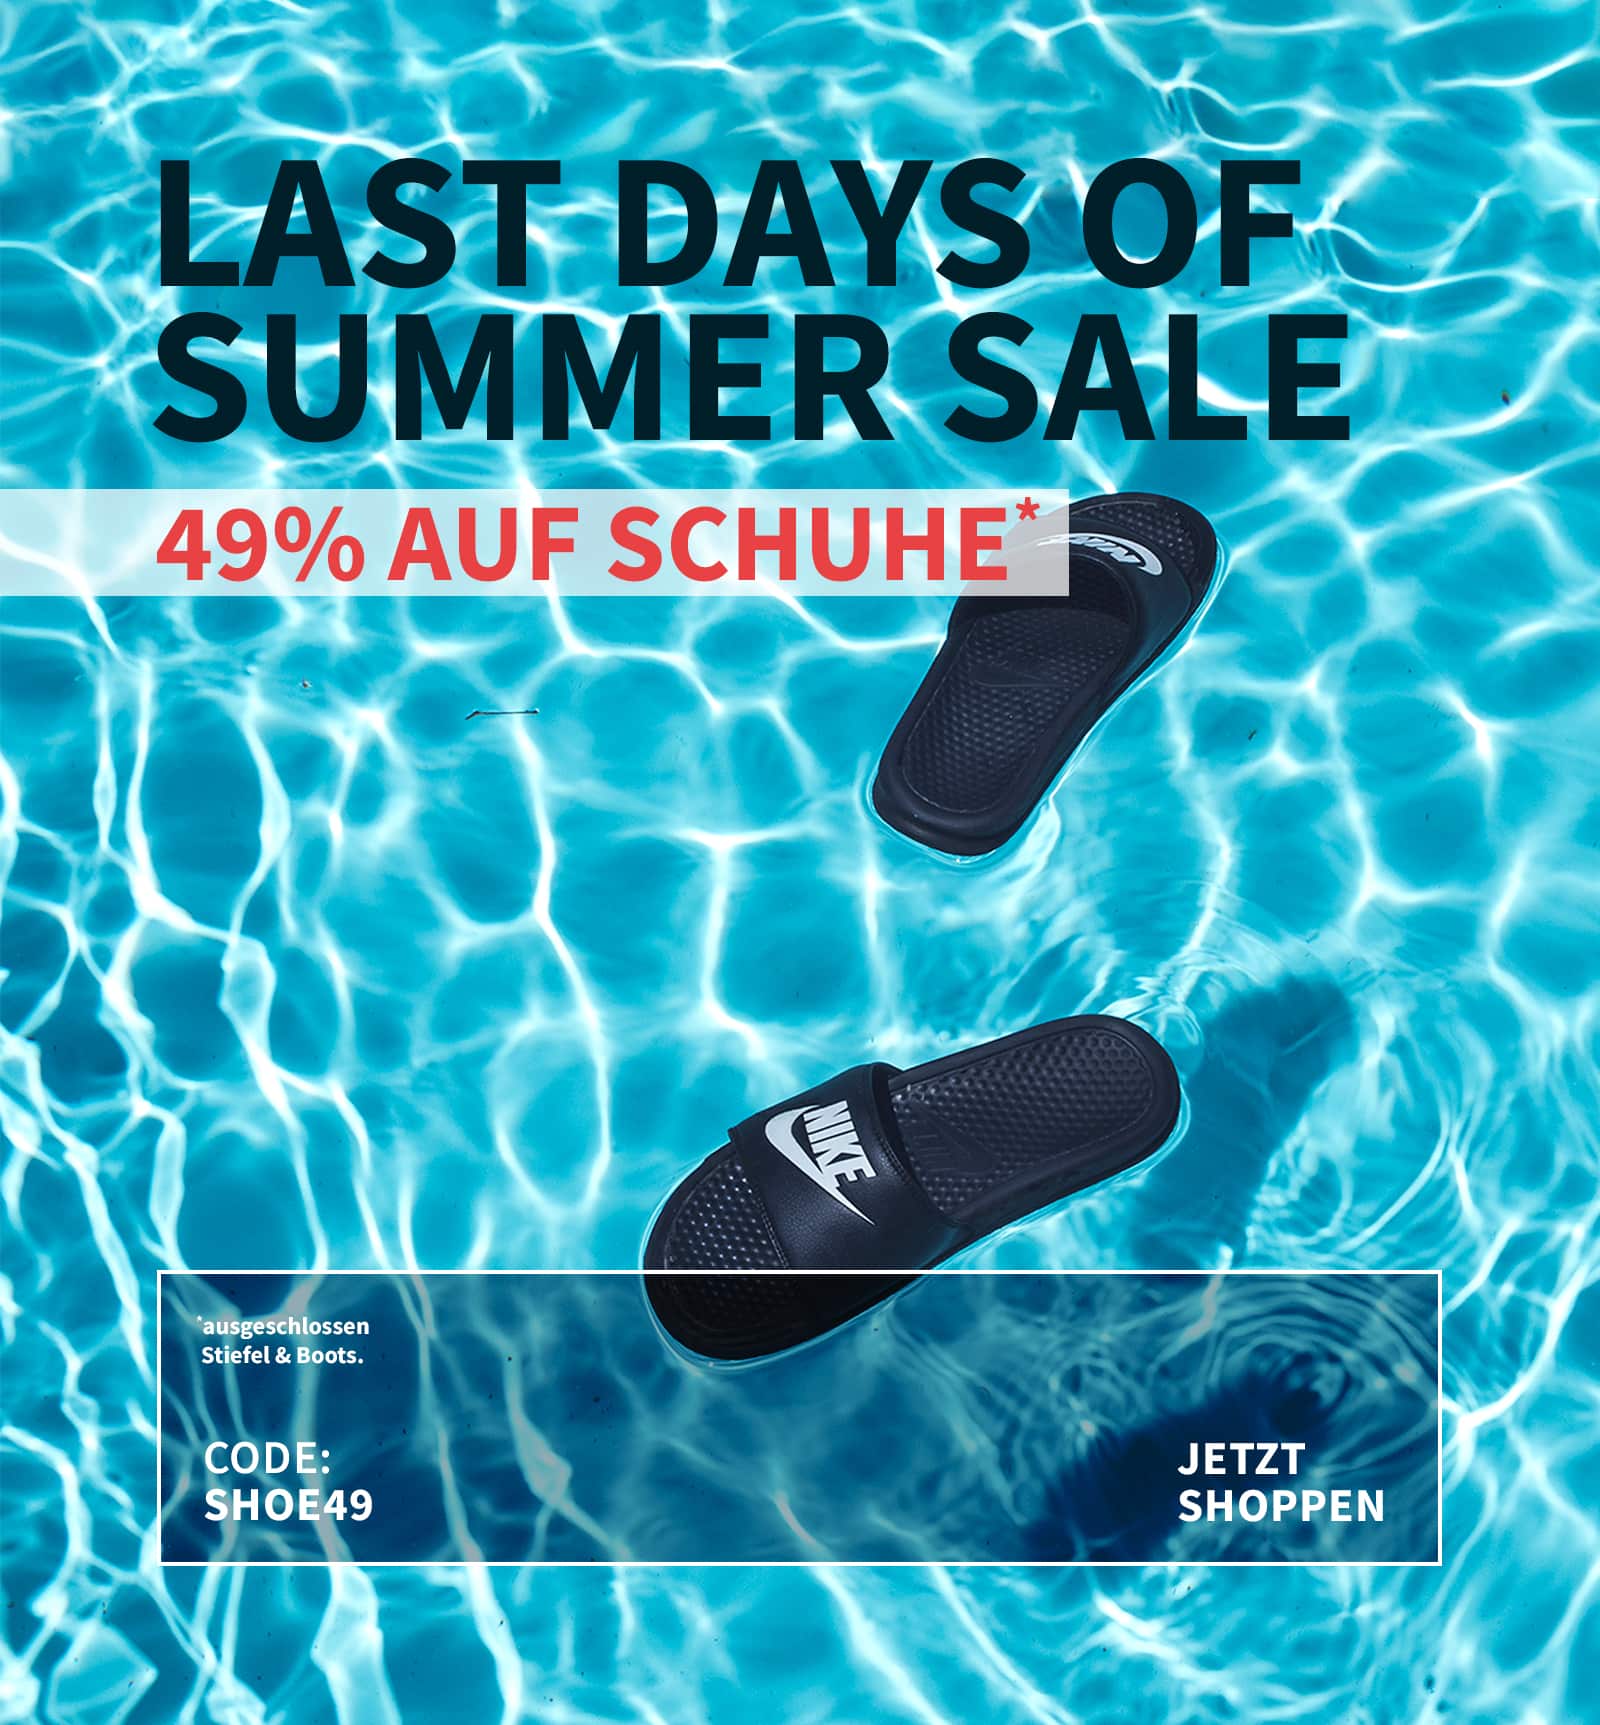 Summer Sale Mobile-Banner für Schuhe, mit auf Wasser schwimmenden schwarzen Badelatschen